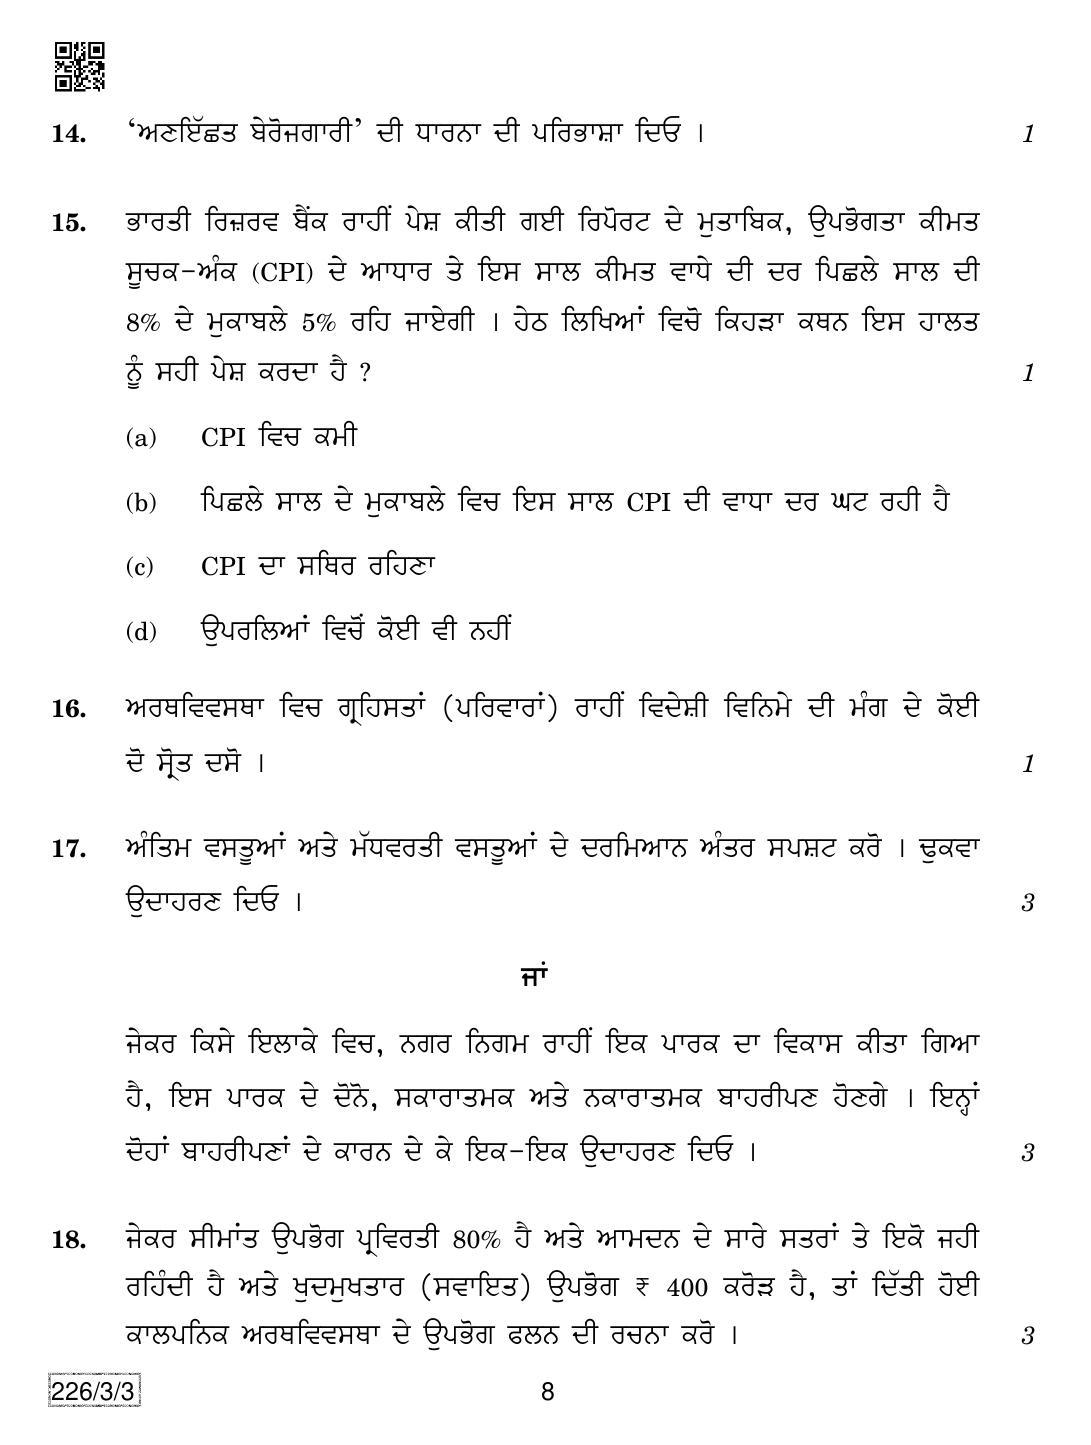 CBSE Class 12 226-3-3 Economics (Punjabi) 2019 Question Paper - Page 8